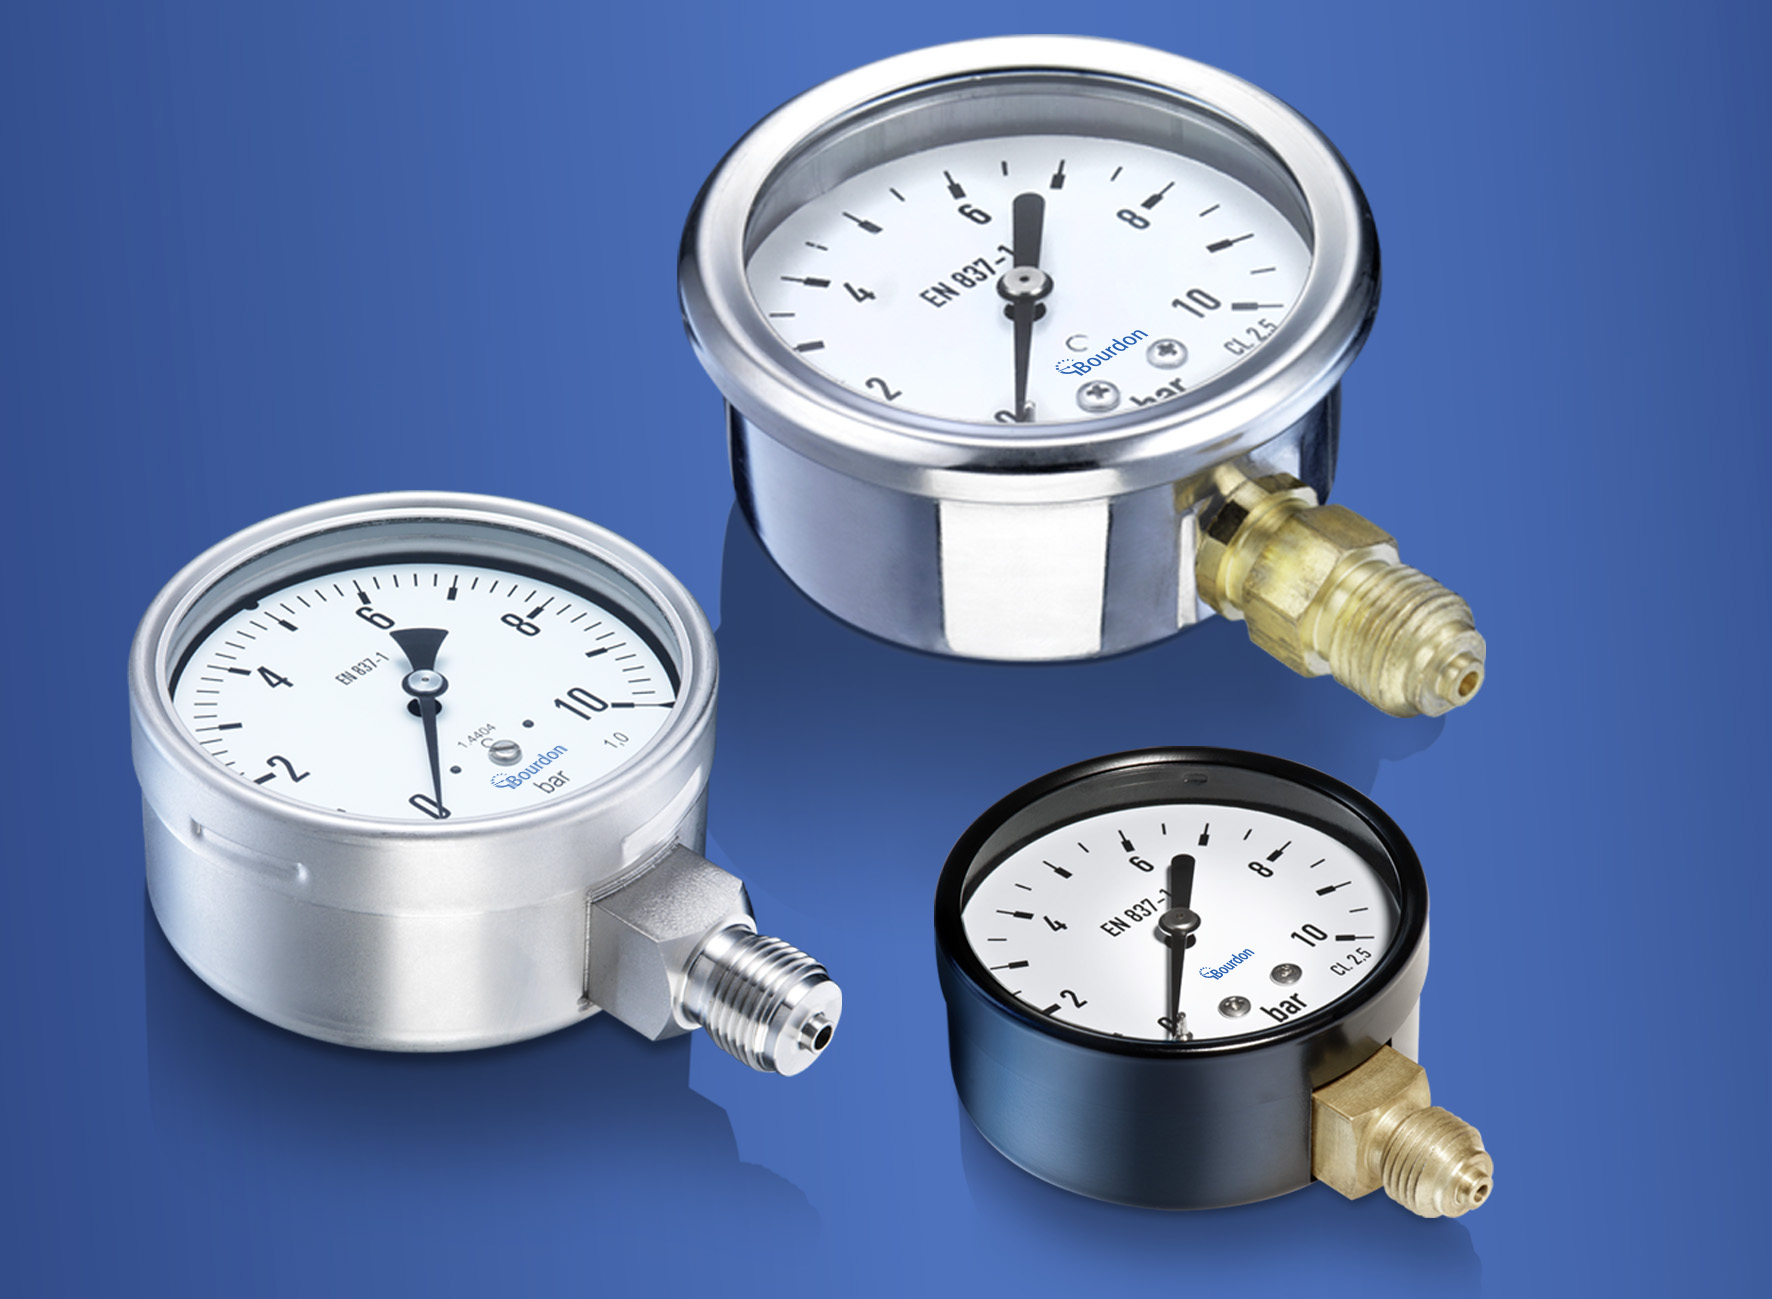 mechanical gauges for pressure measurement